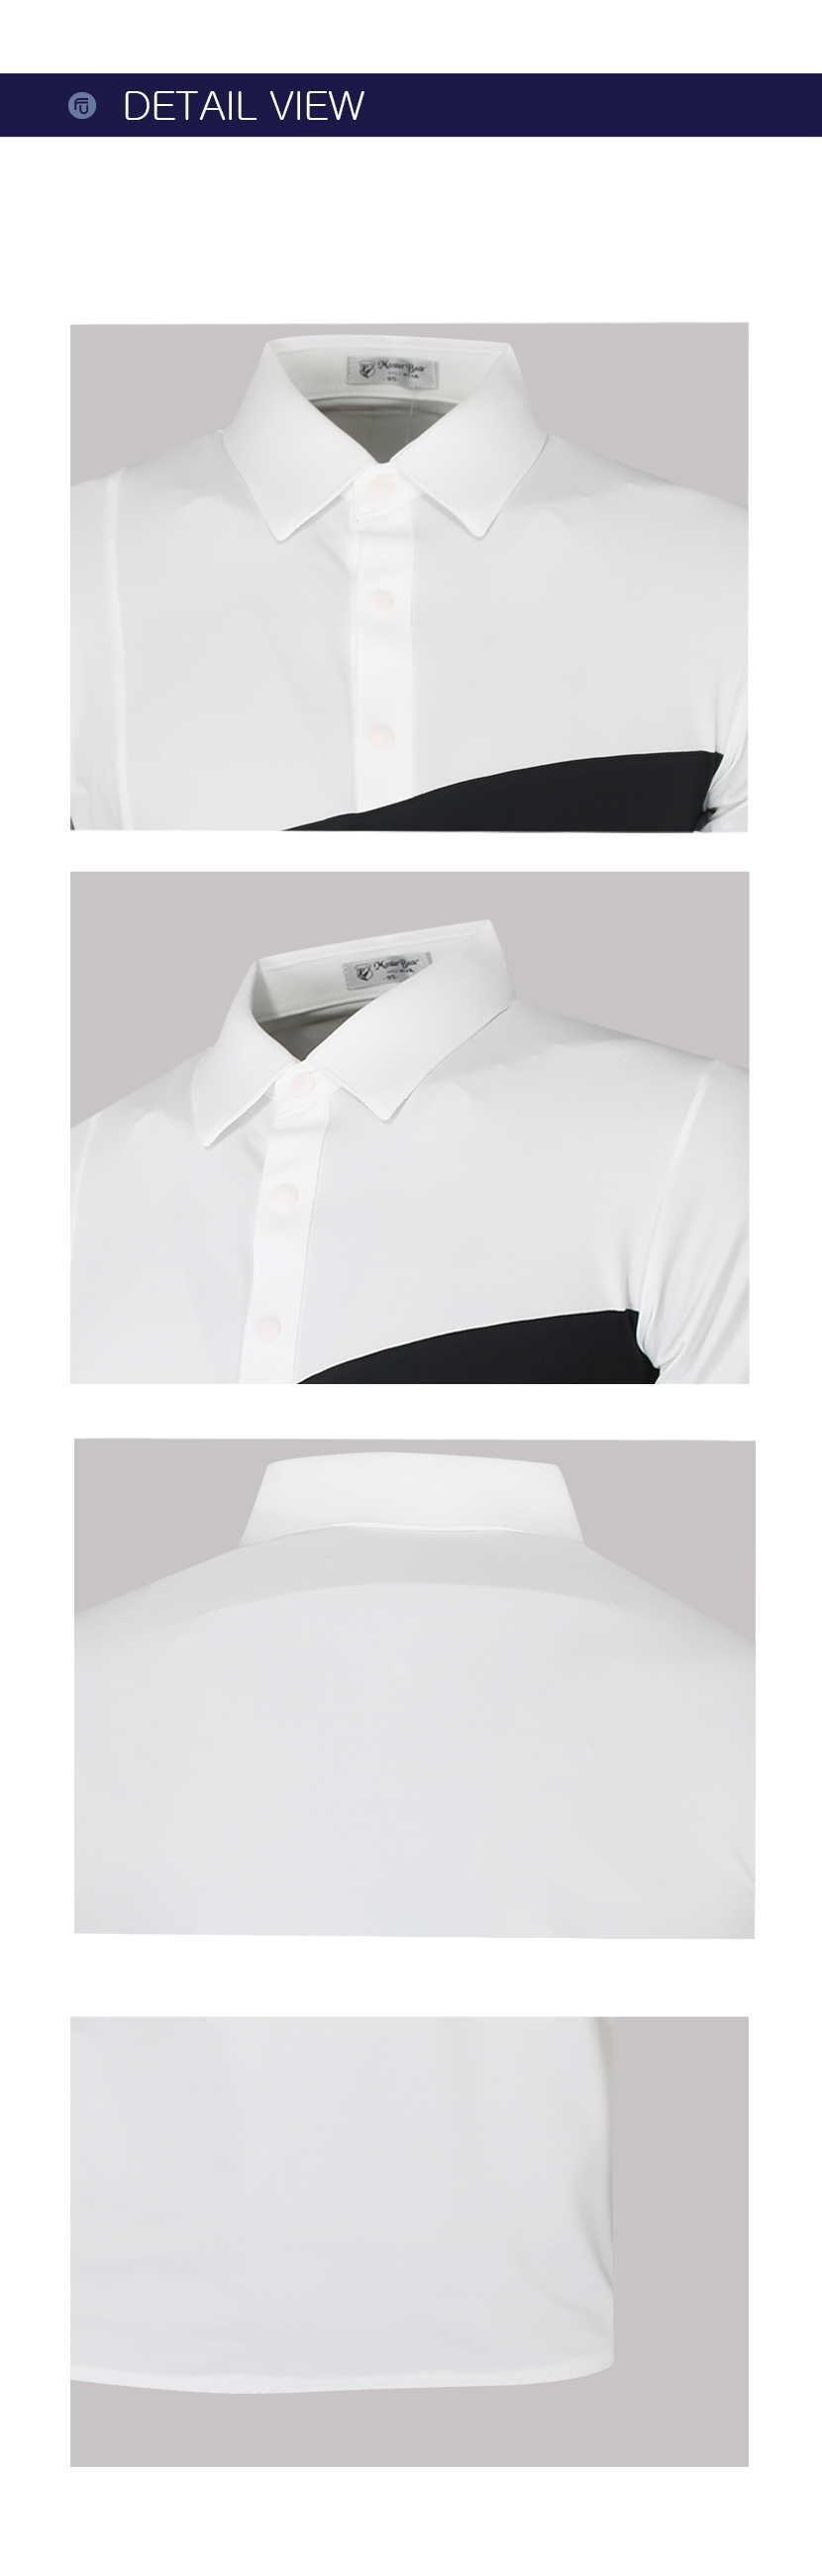 페라어스 남성 어빌릭 골프 티셔츠 CTNMP2020M2